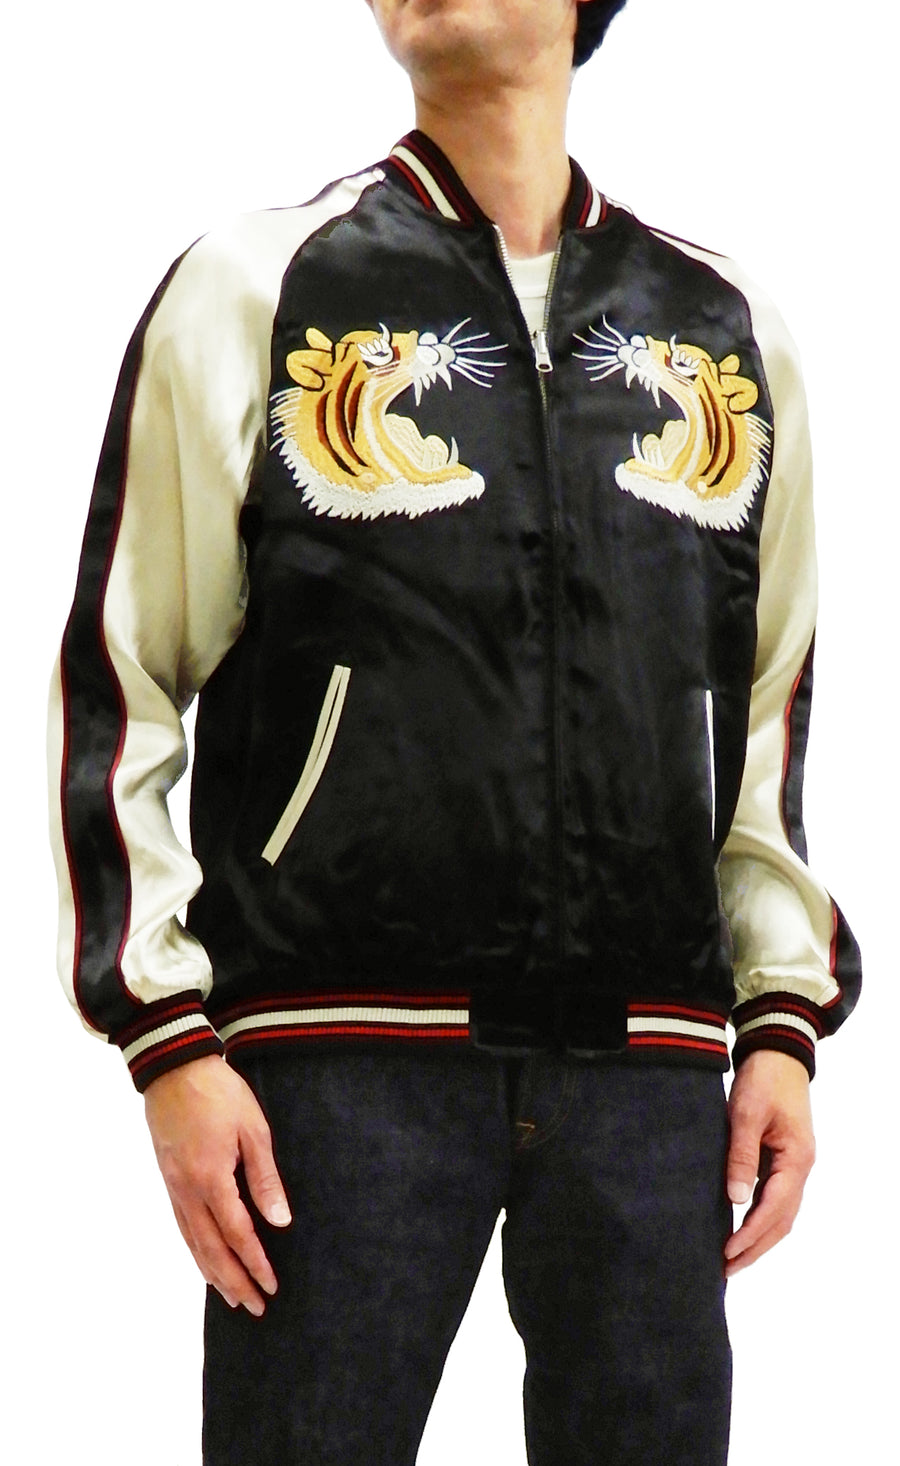 Japanesque Men's Japanese Souvenir Jacket Tiger Embroidered Sukajan 3RSJ-001 Black/Off